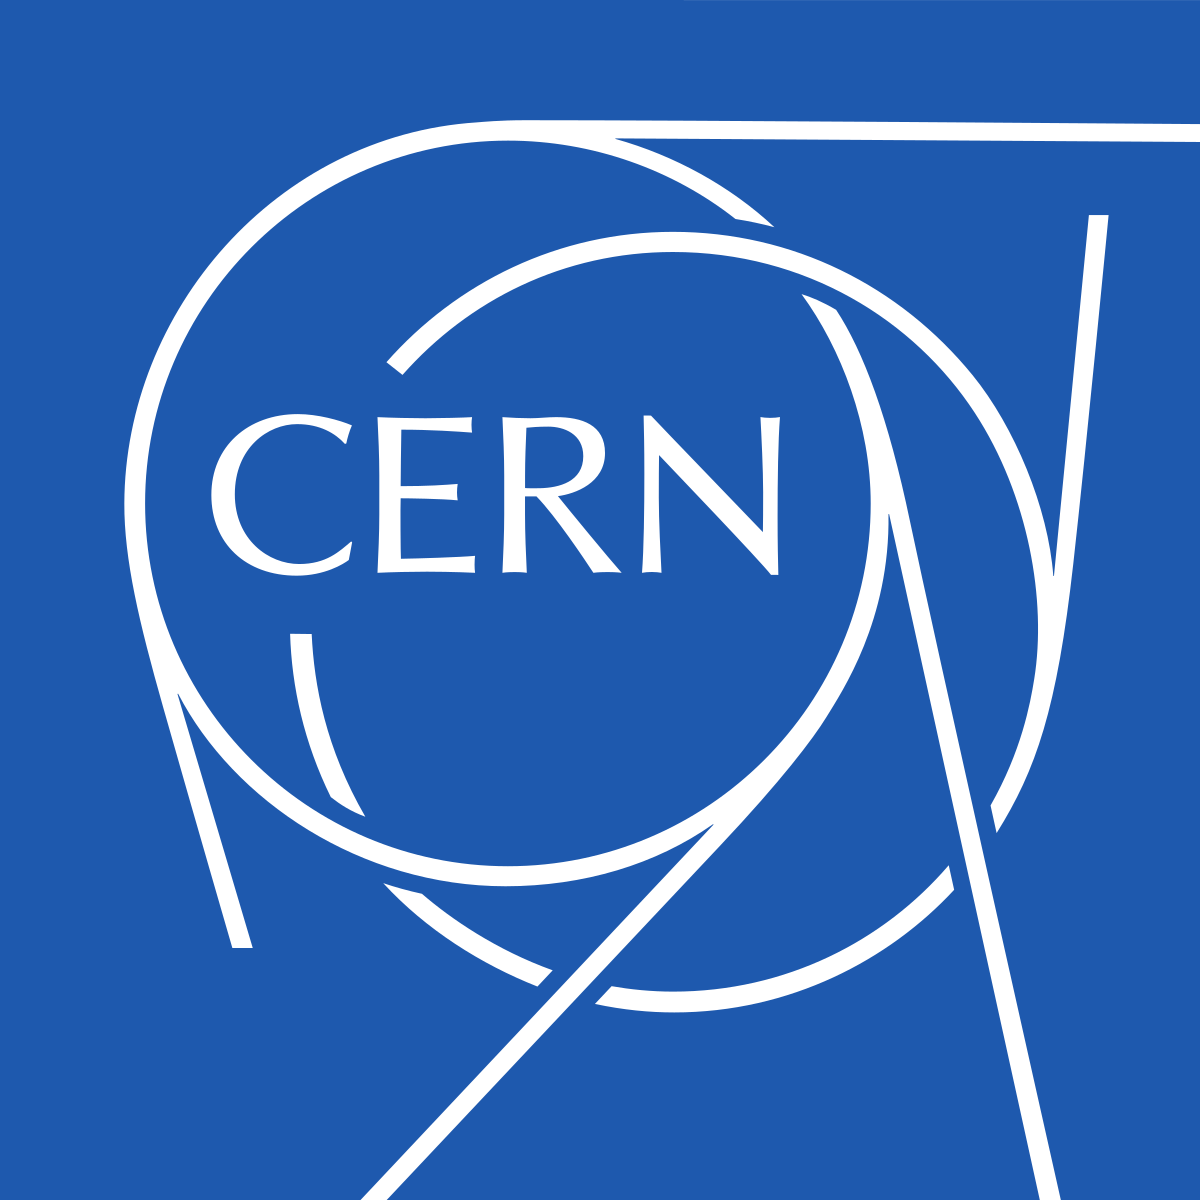 برنامج منح الدكتوراه بين الاكاديمية و CERN المنظمة الأوروبية للعلوم النووية